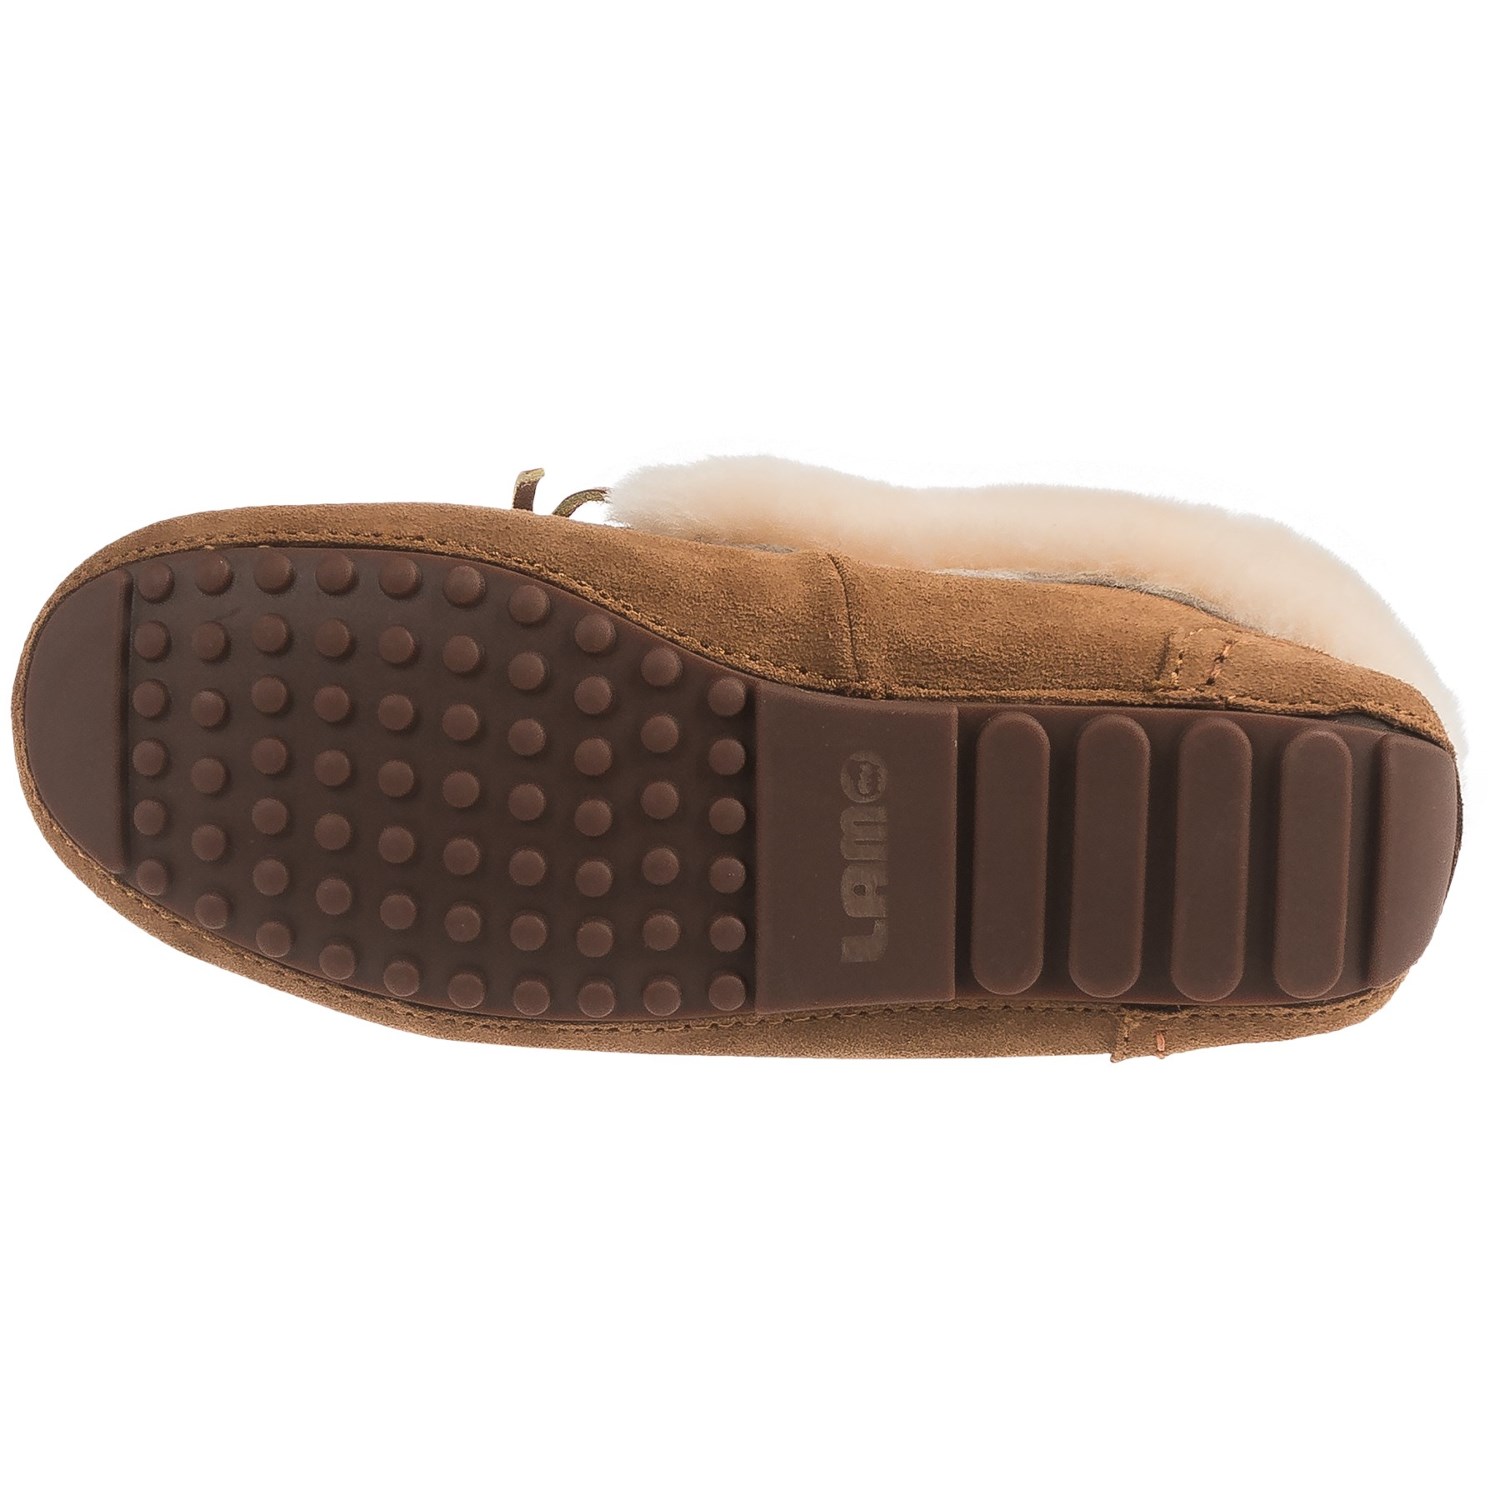 lamo footwear mist moccasin slippers - suede, sheepskin lined